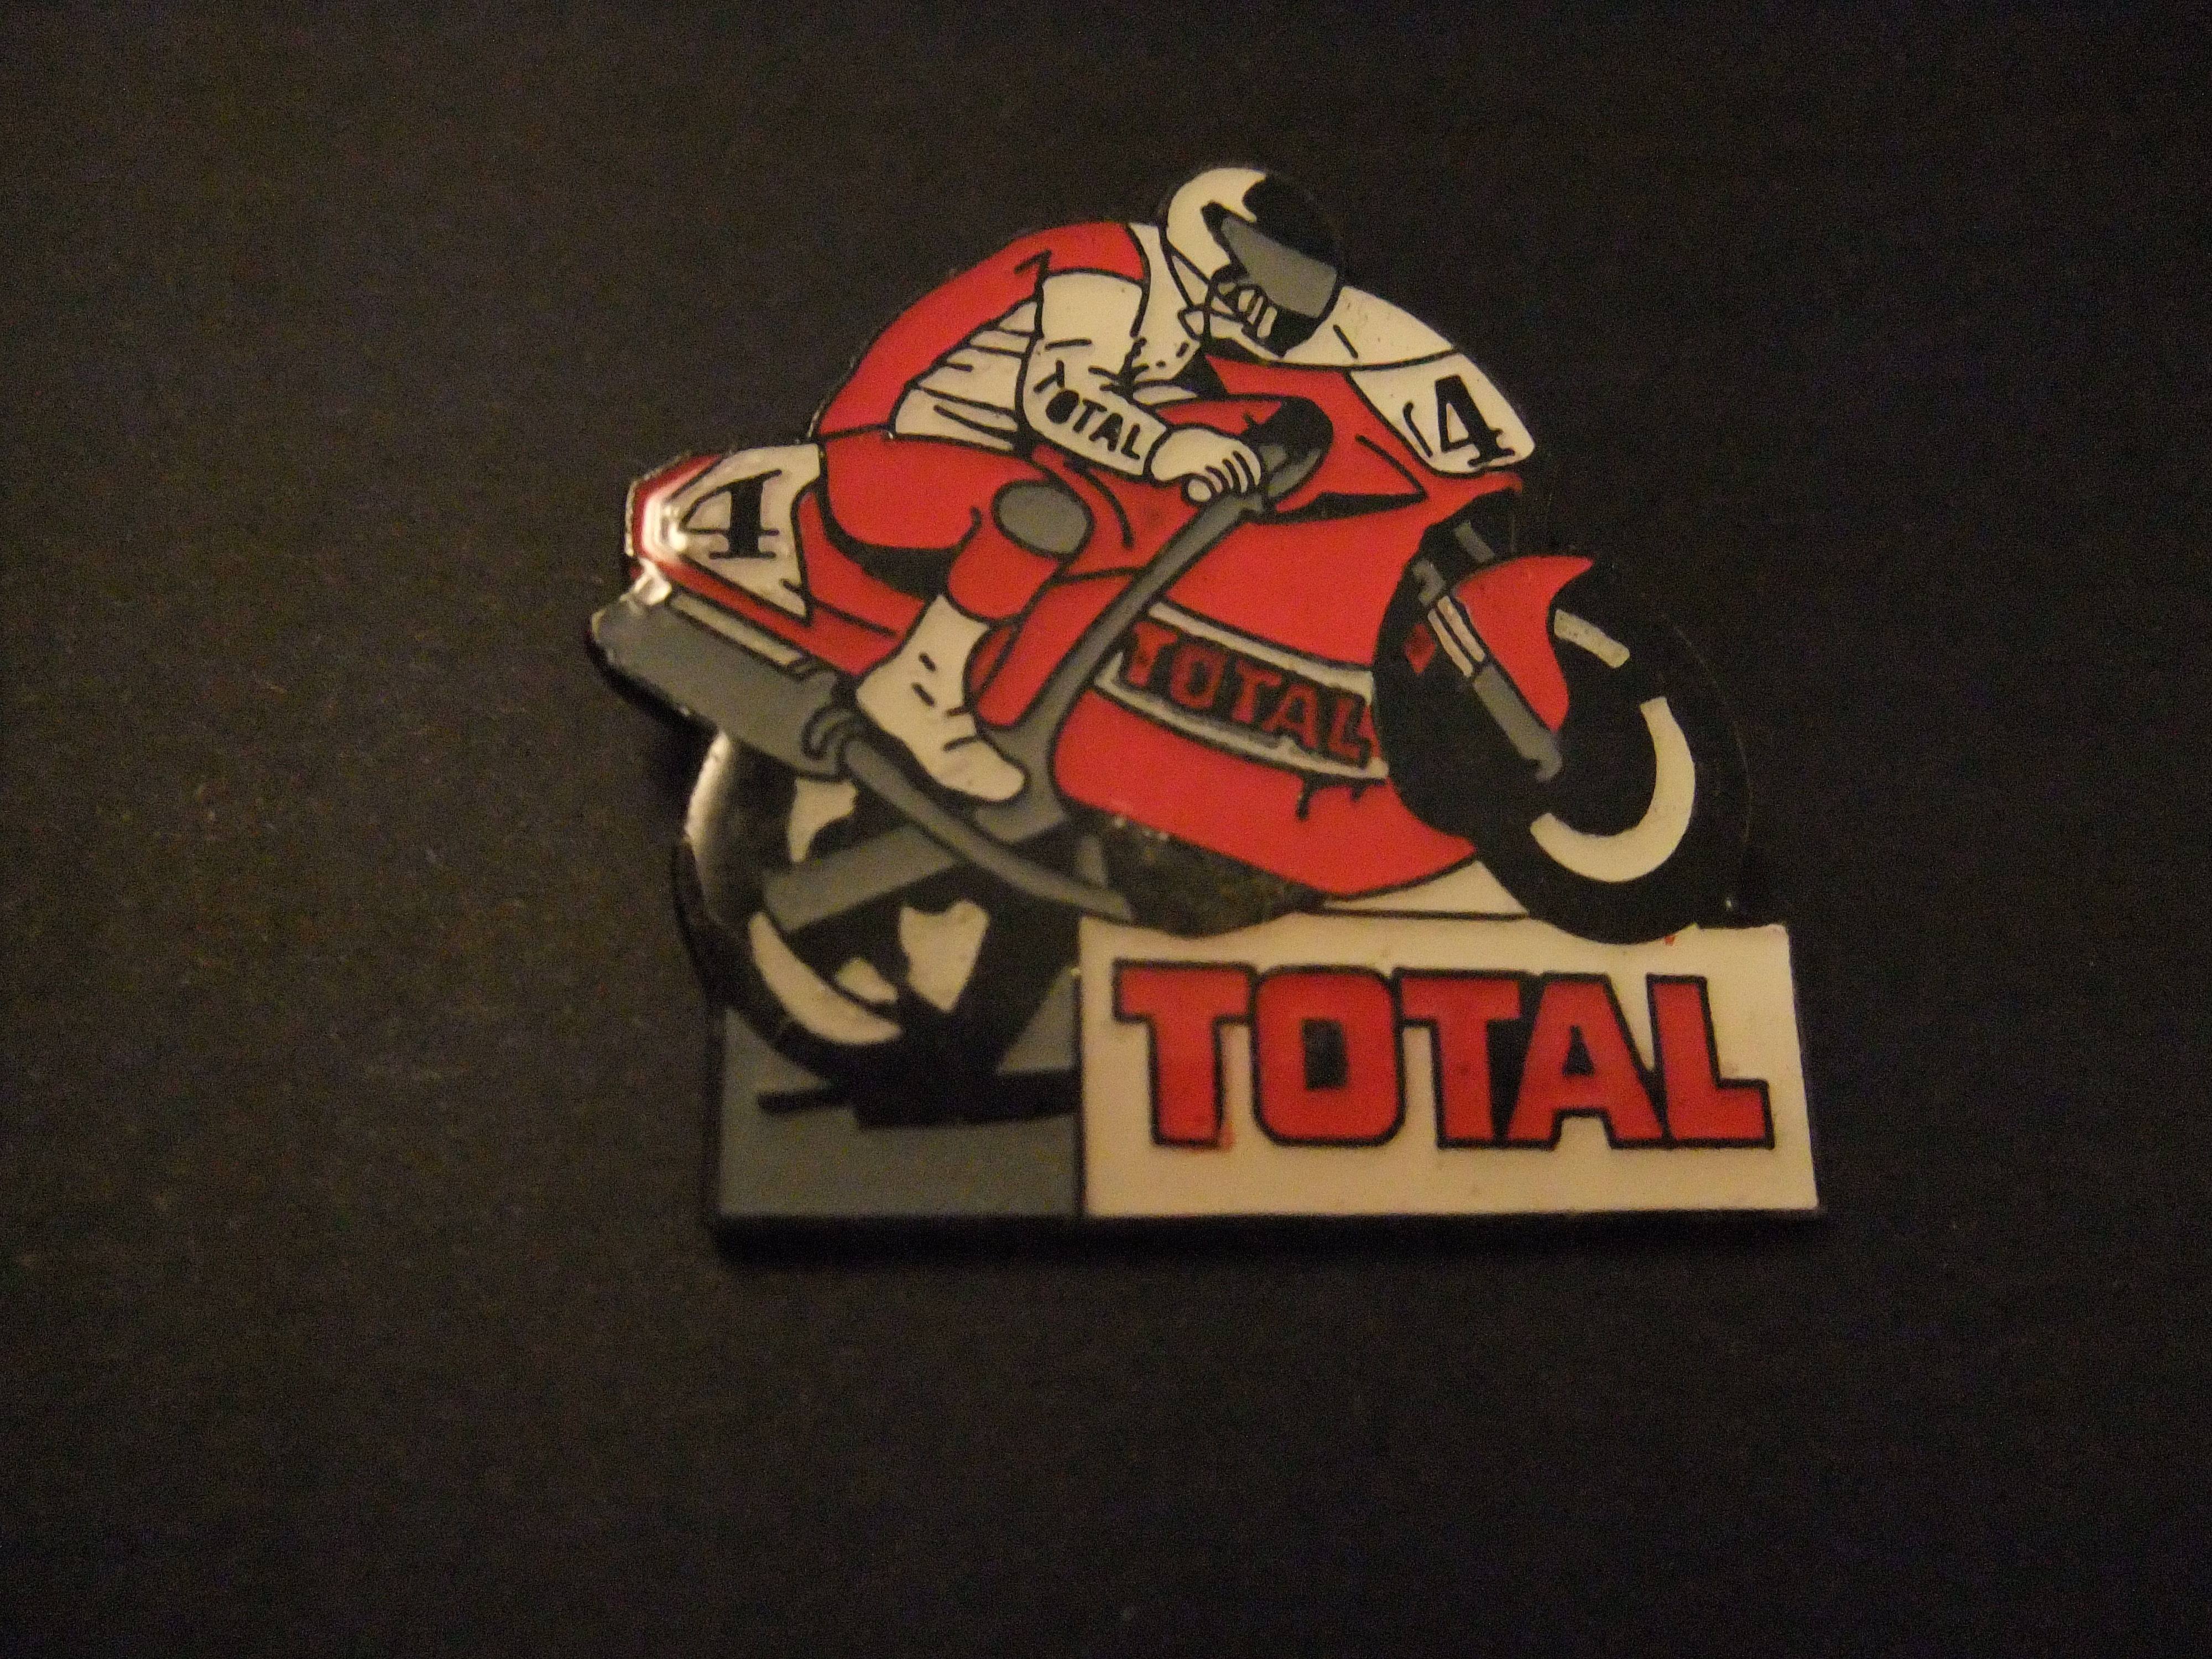 Ducati 888 racer ( wereldkampioenschap superbike) rijder Belgische coureur,  Stephane Mertens met startnummer 4 sponsor Total benzine